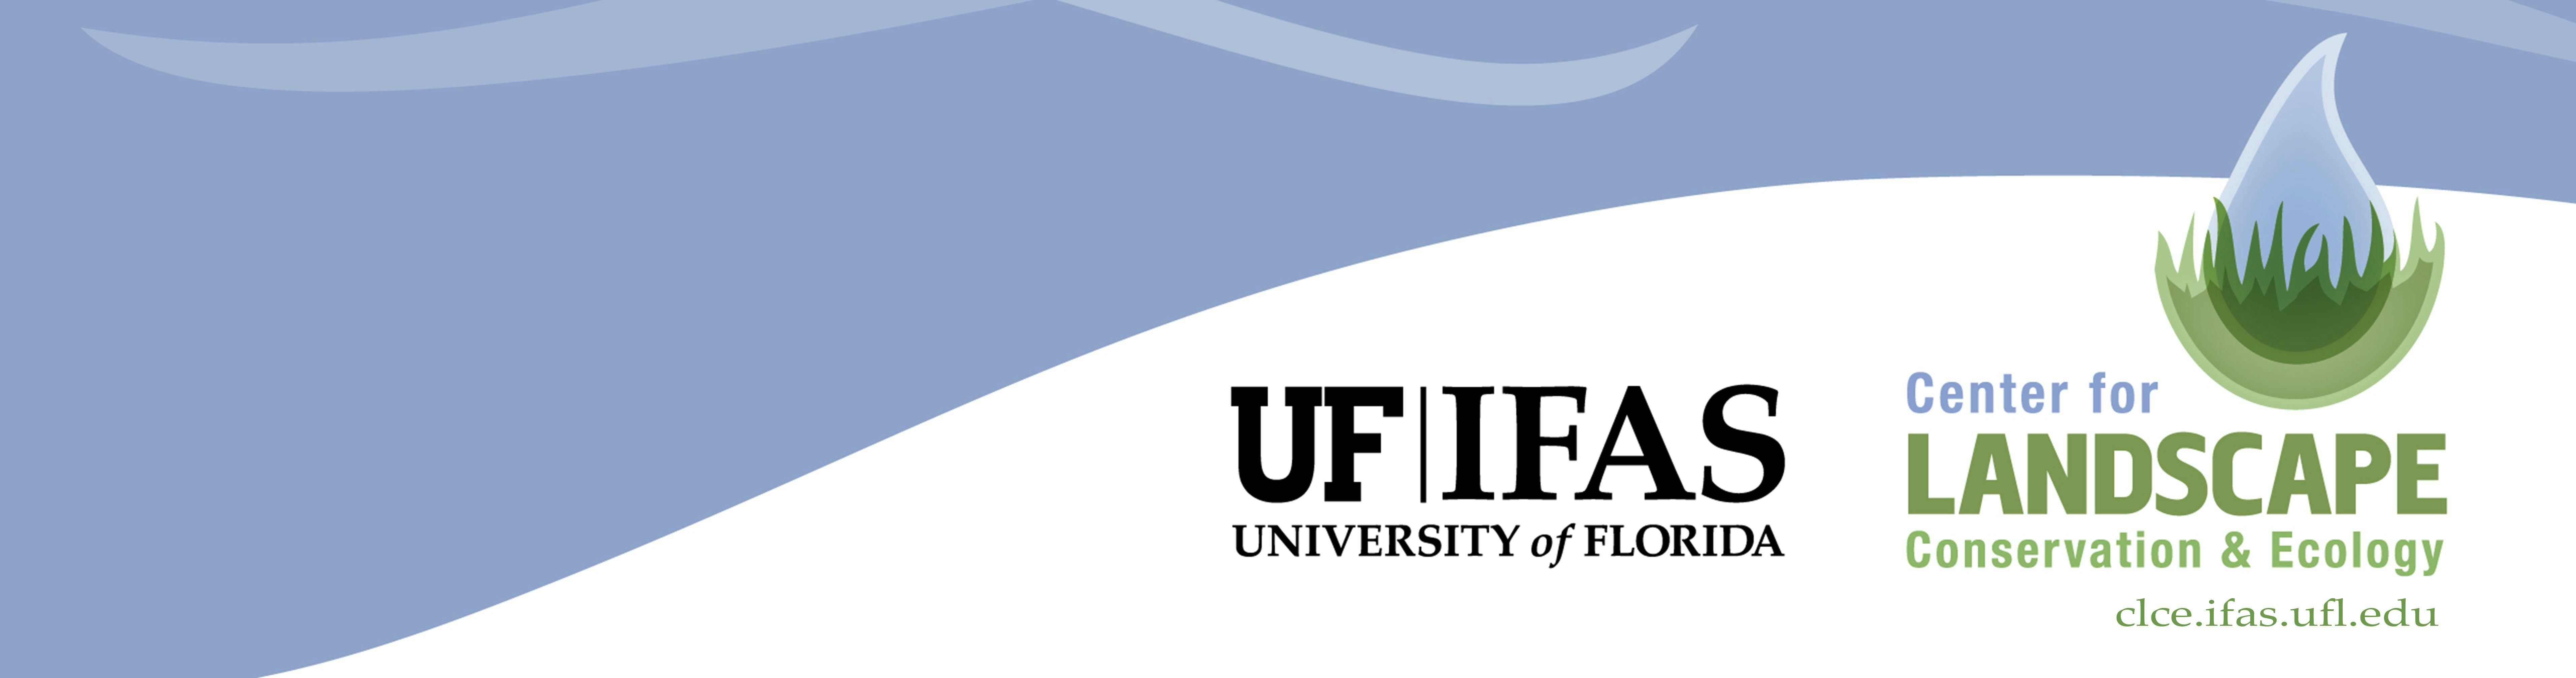 2019 UF/IFAS Urban Landscape Summit